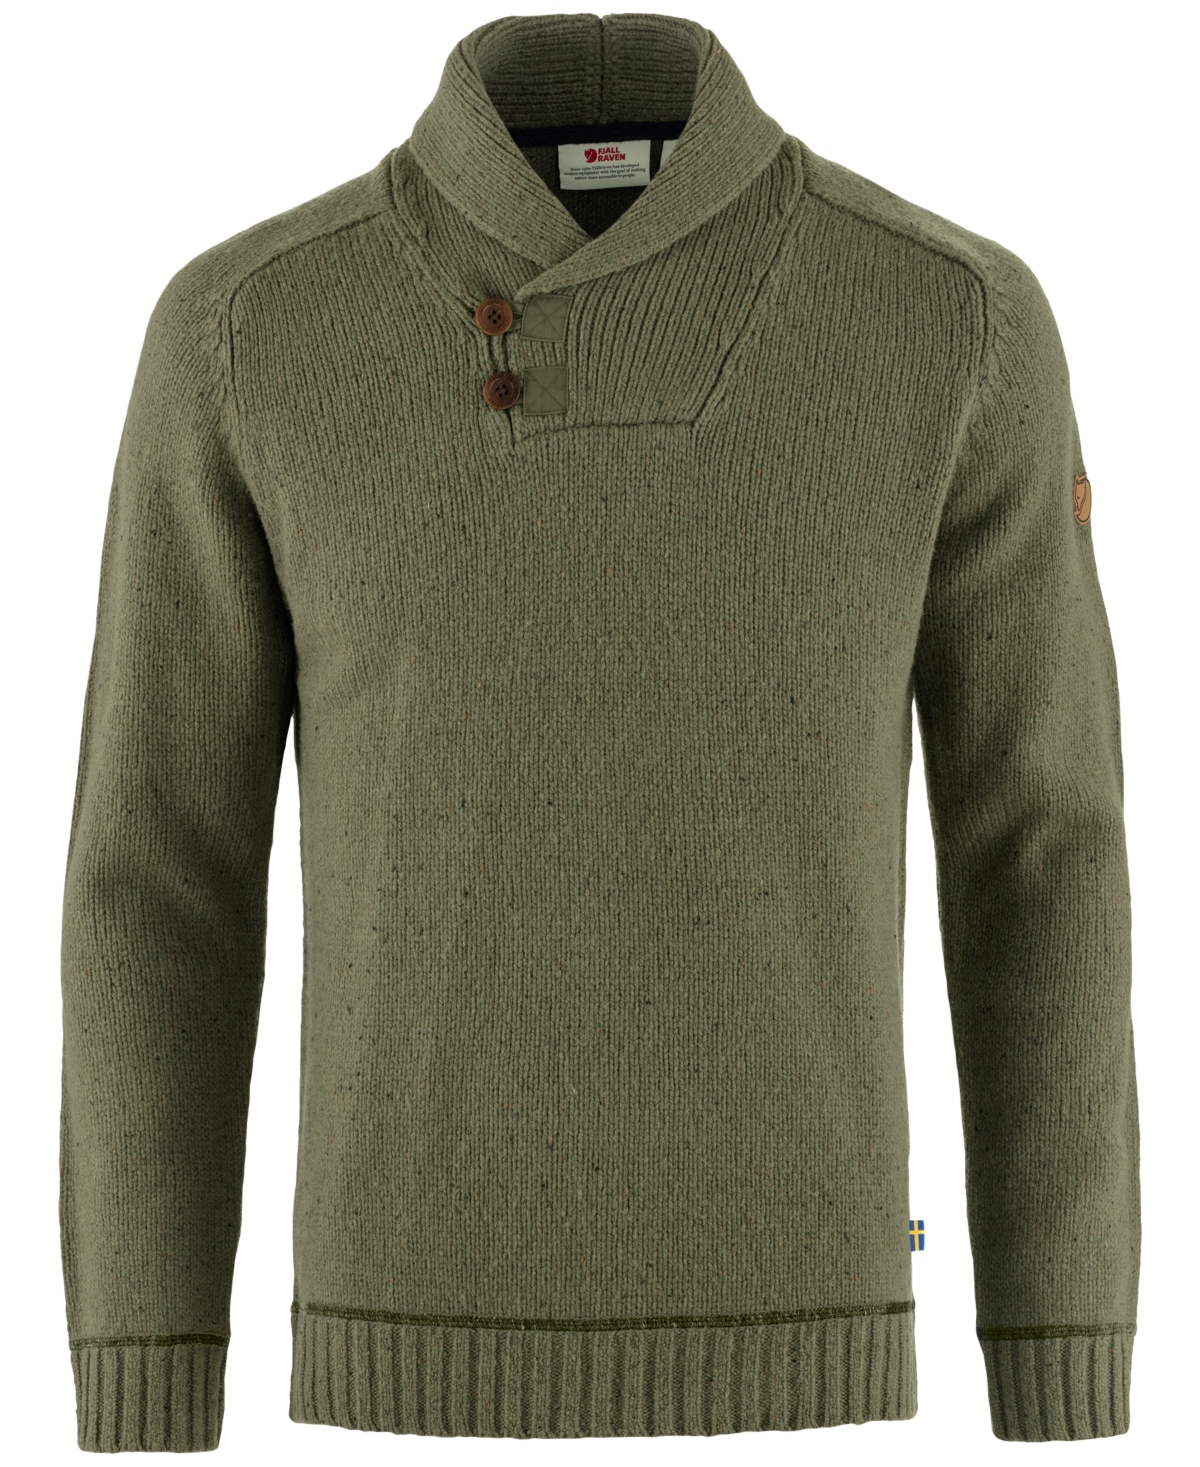 Men's Lada Sweater - Dark Navy